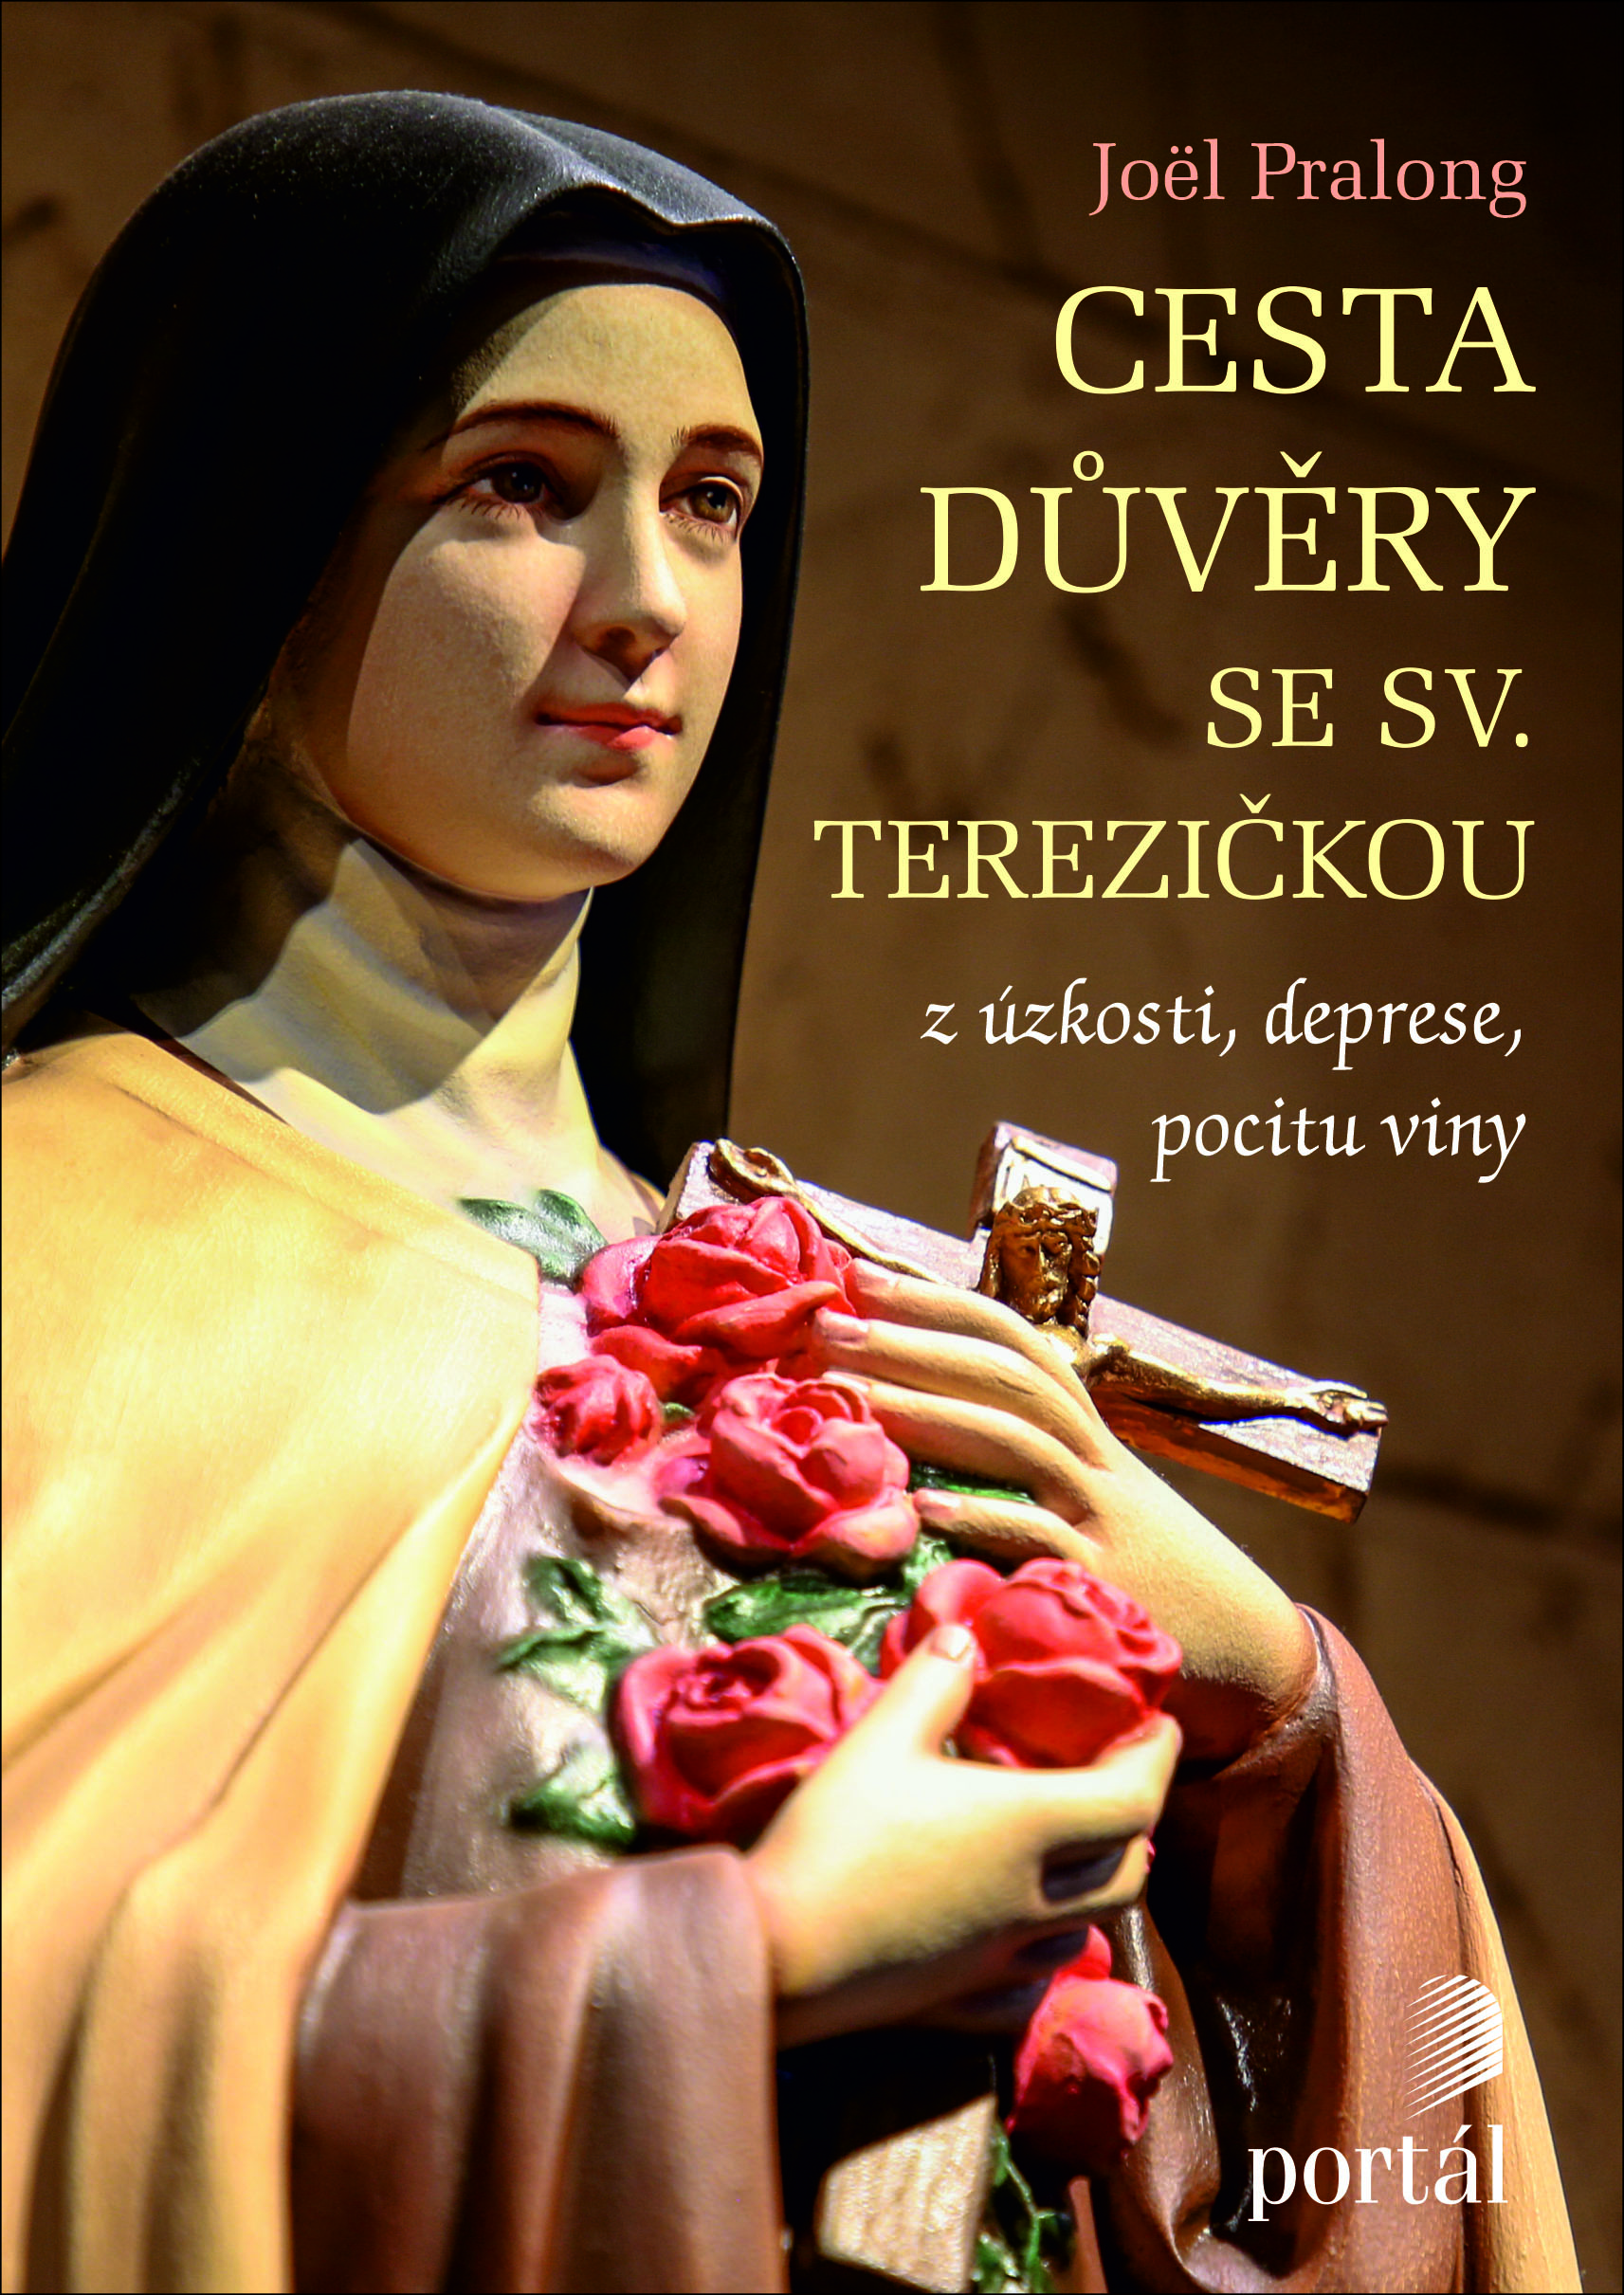 obálka knihy se snímkem sošky sv. Terezičky